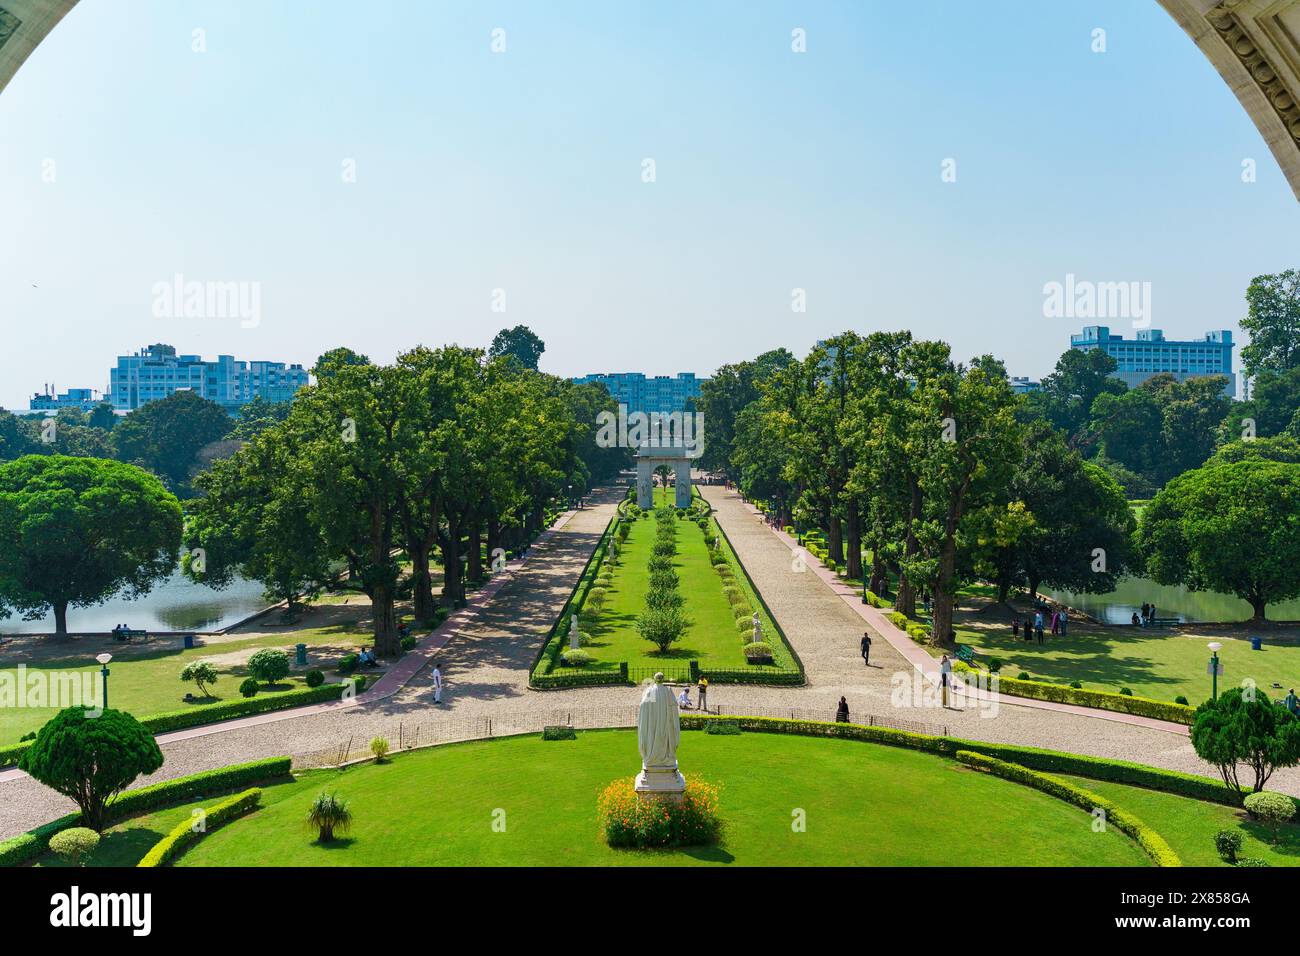 Das Victoria Memorial, ein historisches Wahrzeichen von Kalkutta, wird an einem sonnigen Tag mit klarem blauen Himmel gesehen. Eines der berühmtesten Denkmäler des indischen Cit Stockfoto